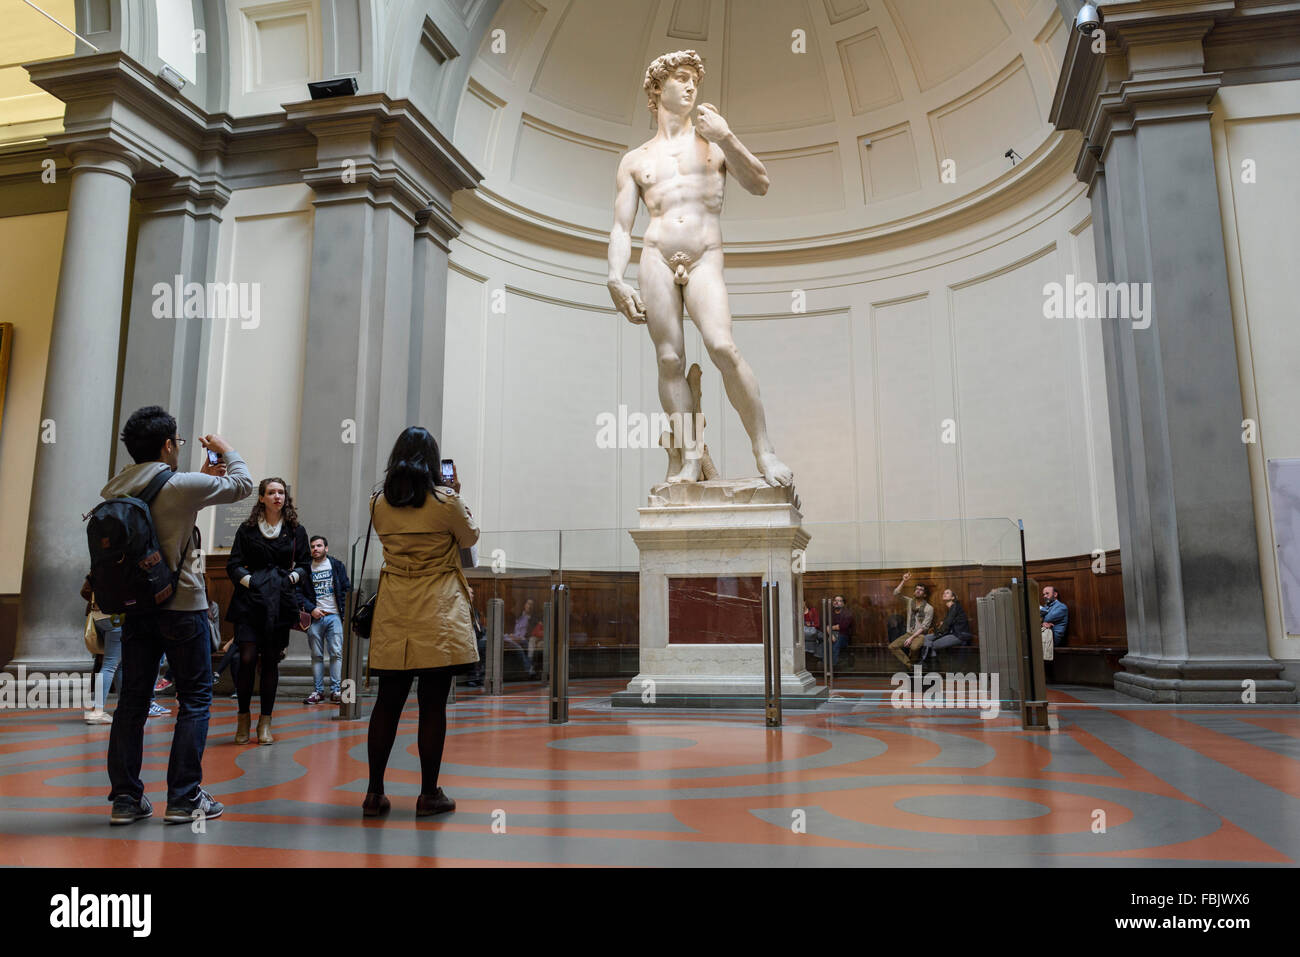 Firenze. L'Italia. Turisti visitano Michelangelo della statua del David alla Galleria dell'Accademia. Galleria dell'Accademia di Firenze. Foto Stock